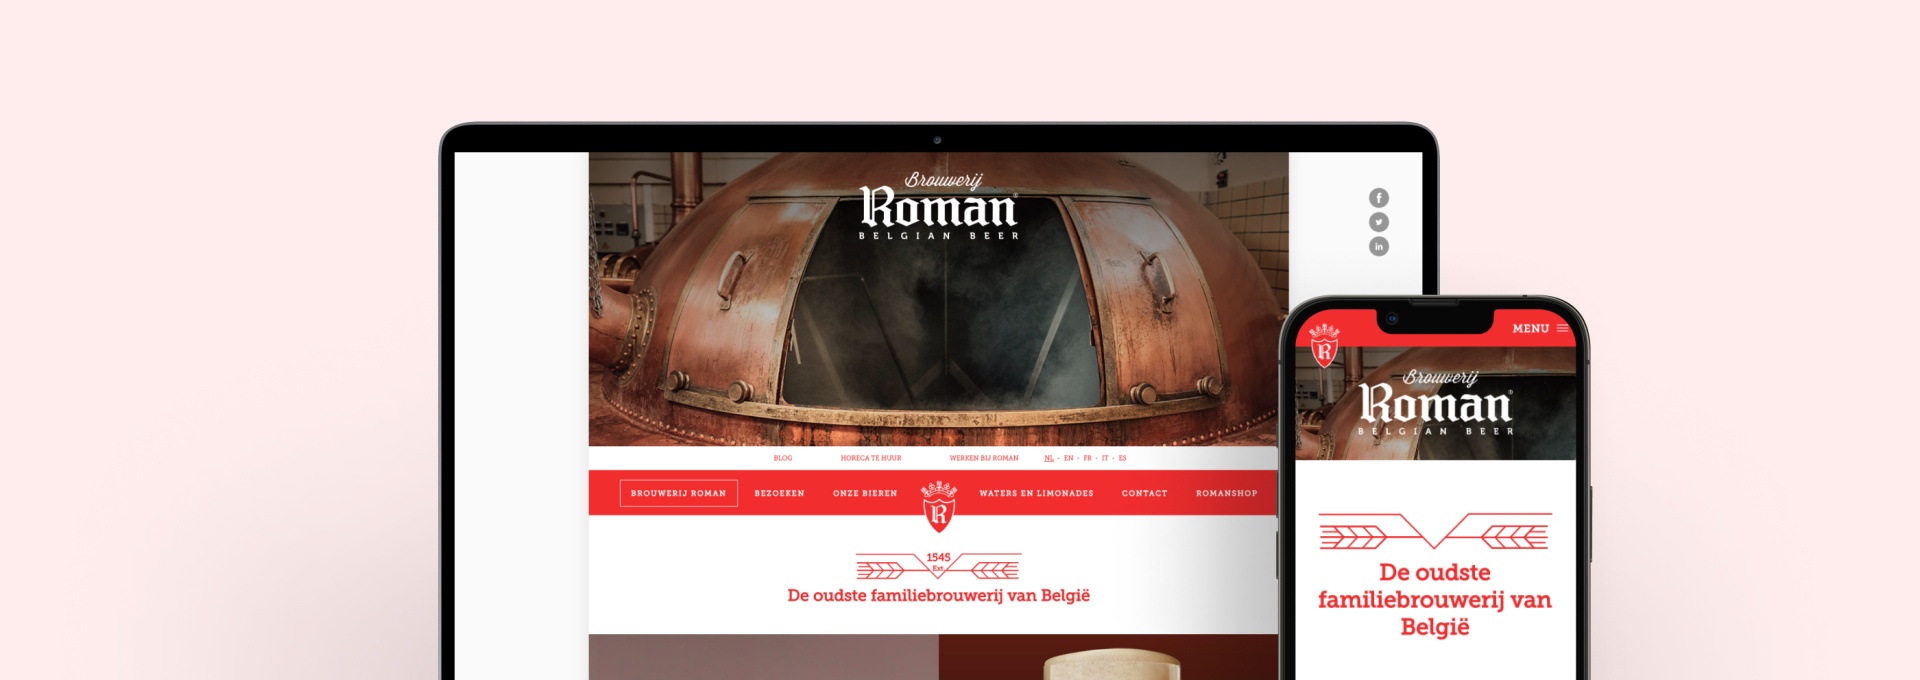 Responsive presentatie website Brouwerij Roman